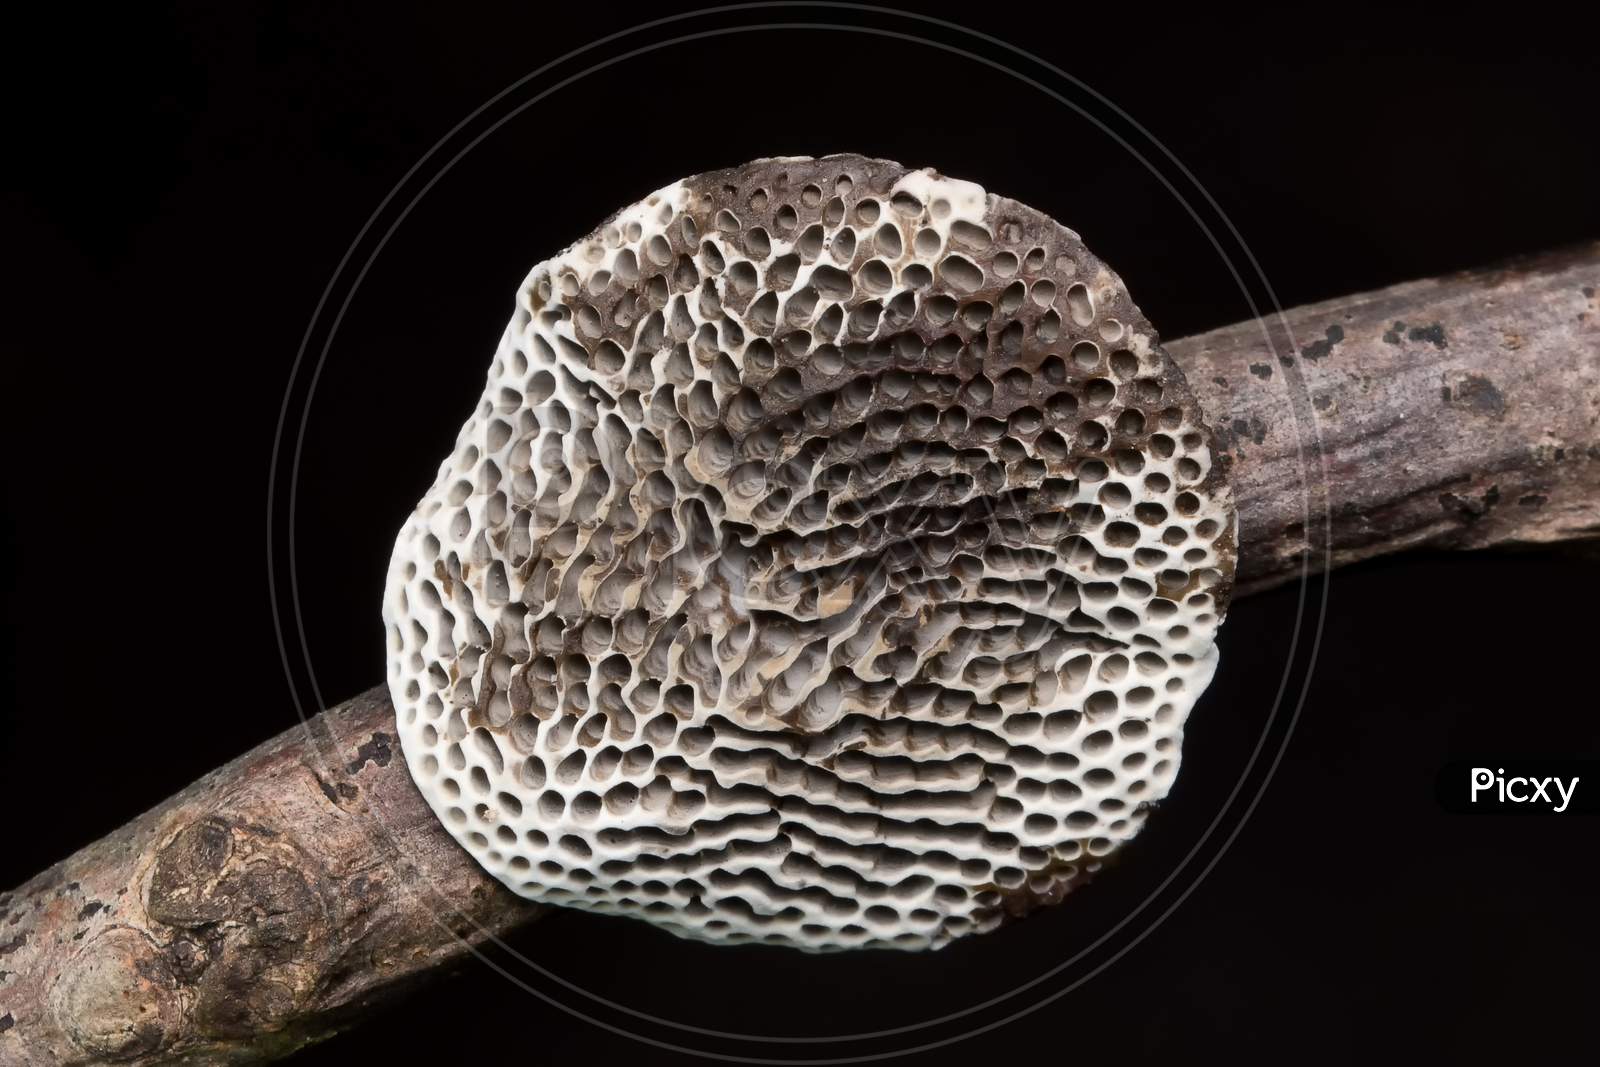 Honeycomb Bracket Fungus, (Hexagonia Tenuis) Polyporaceae